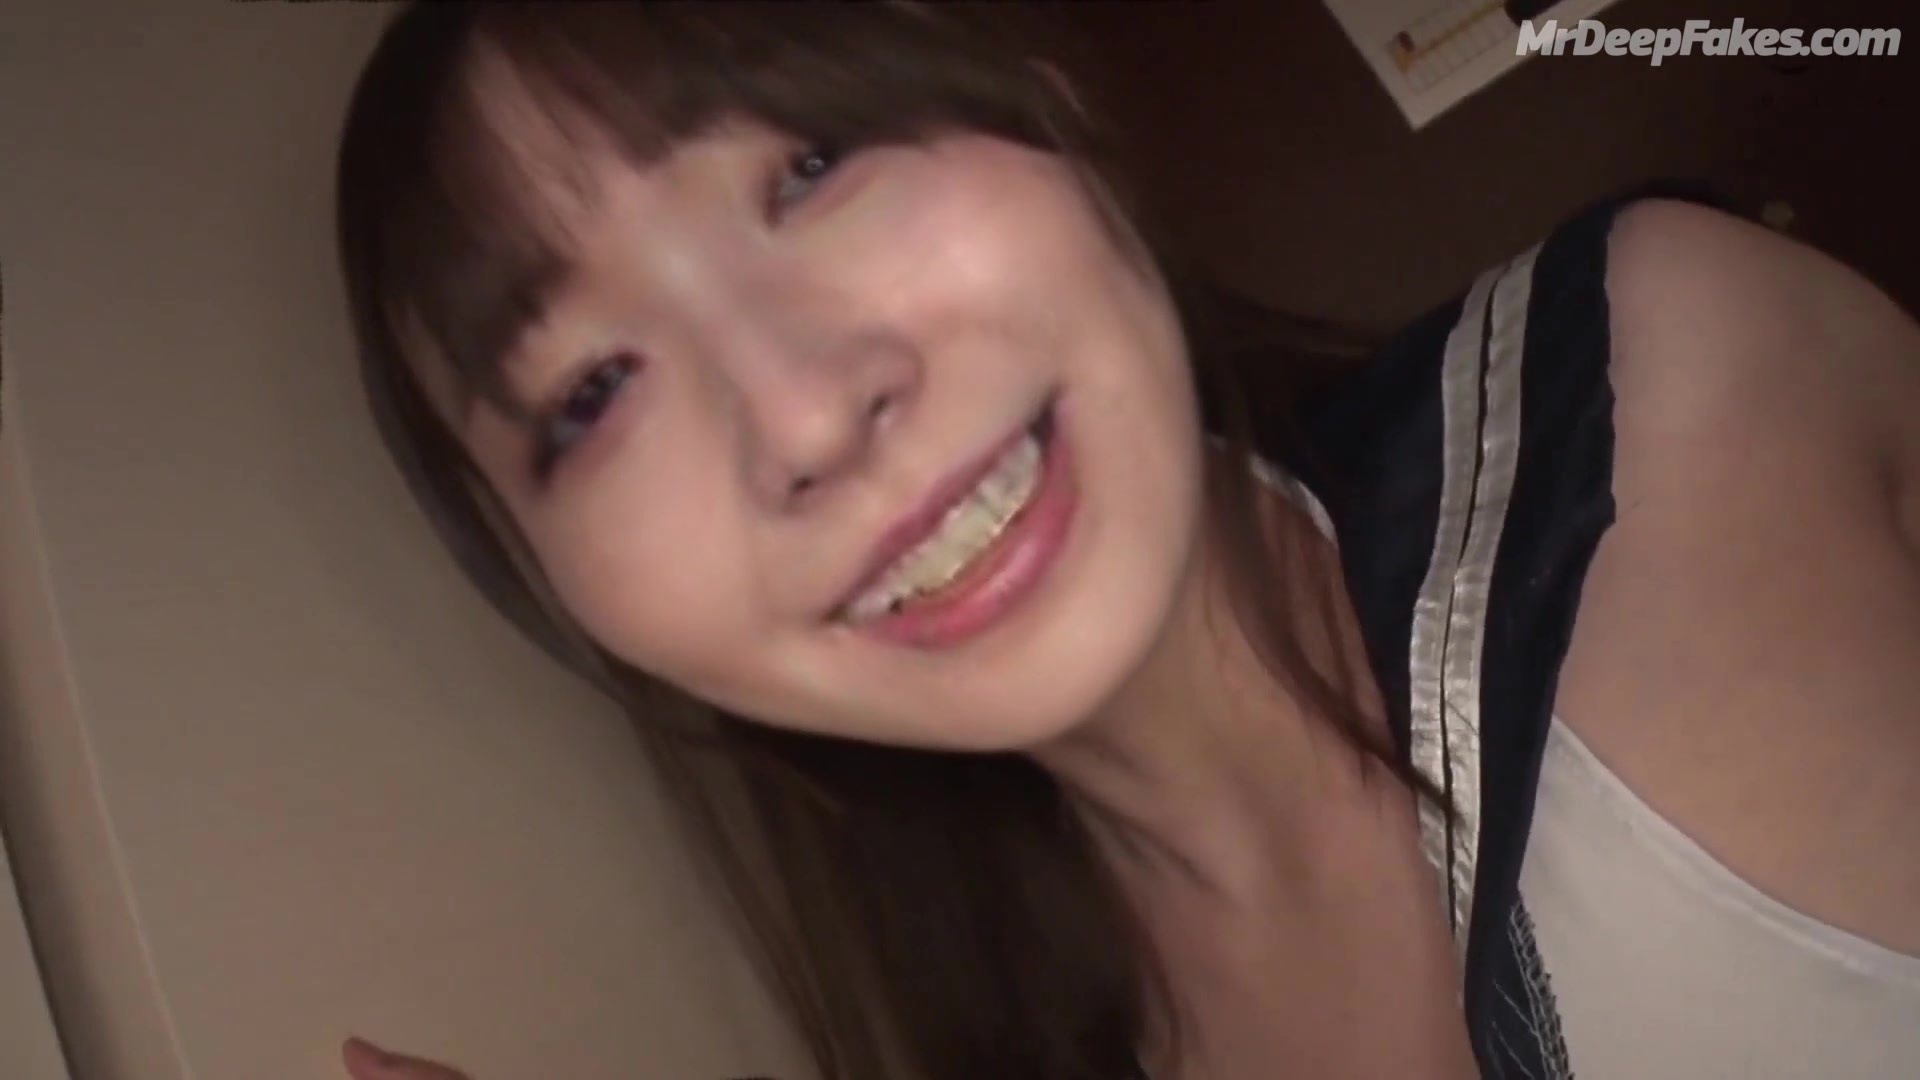 SKE48 Matsui Jurina ist voll mit frischem Sperma Deepfake Matsui Jurina Sperm Sex Fake Porn